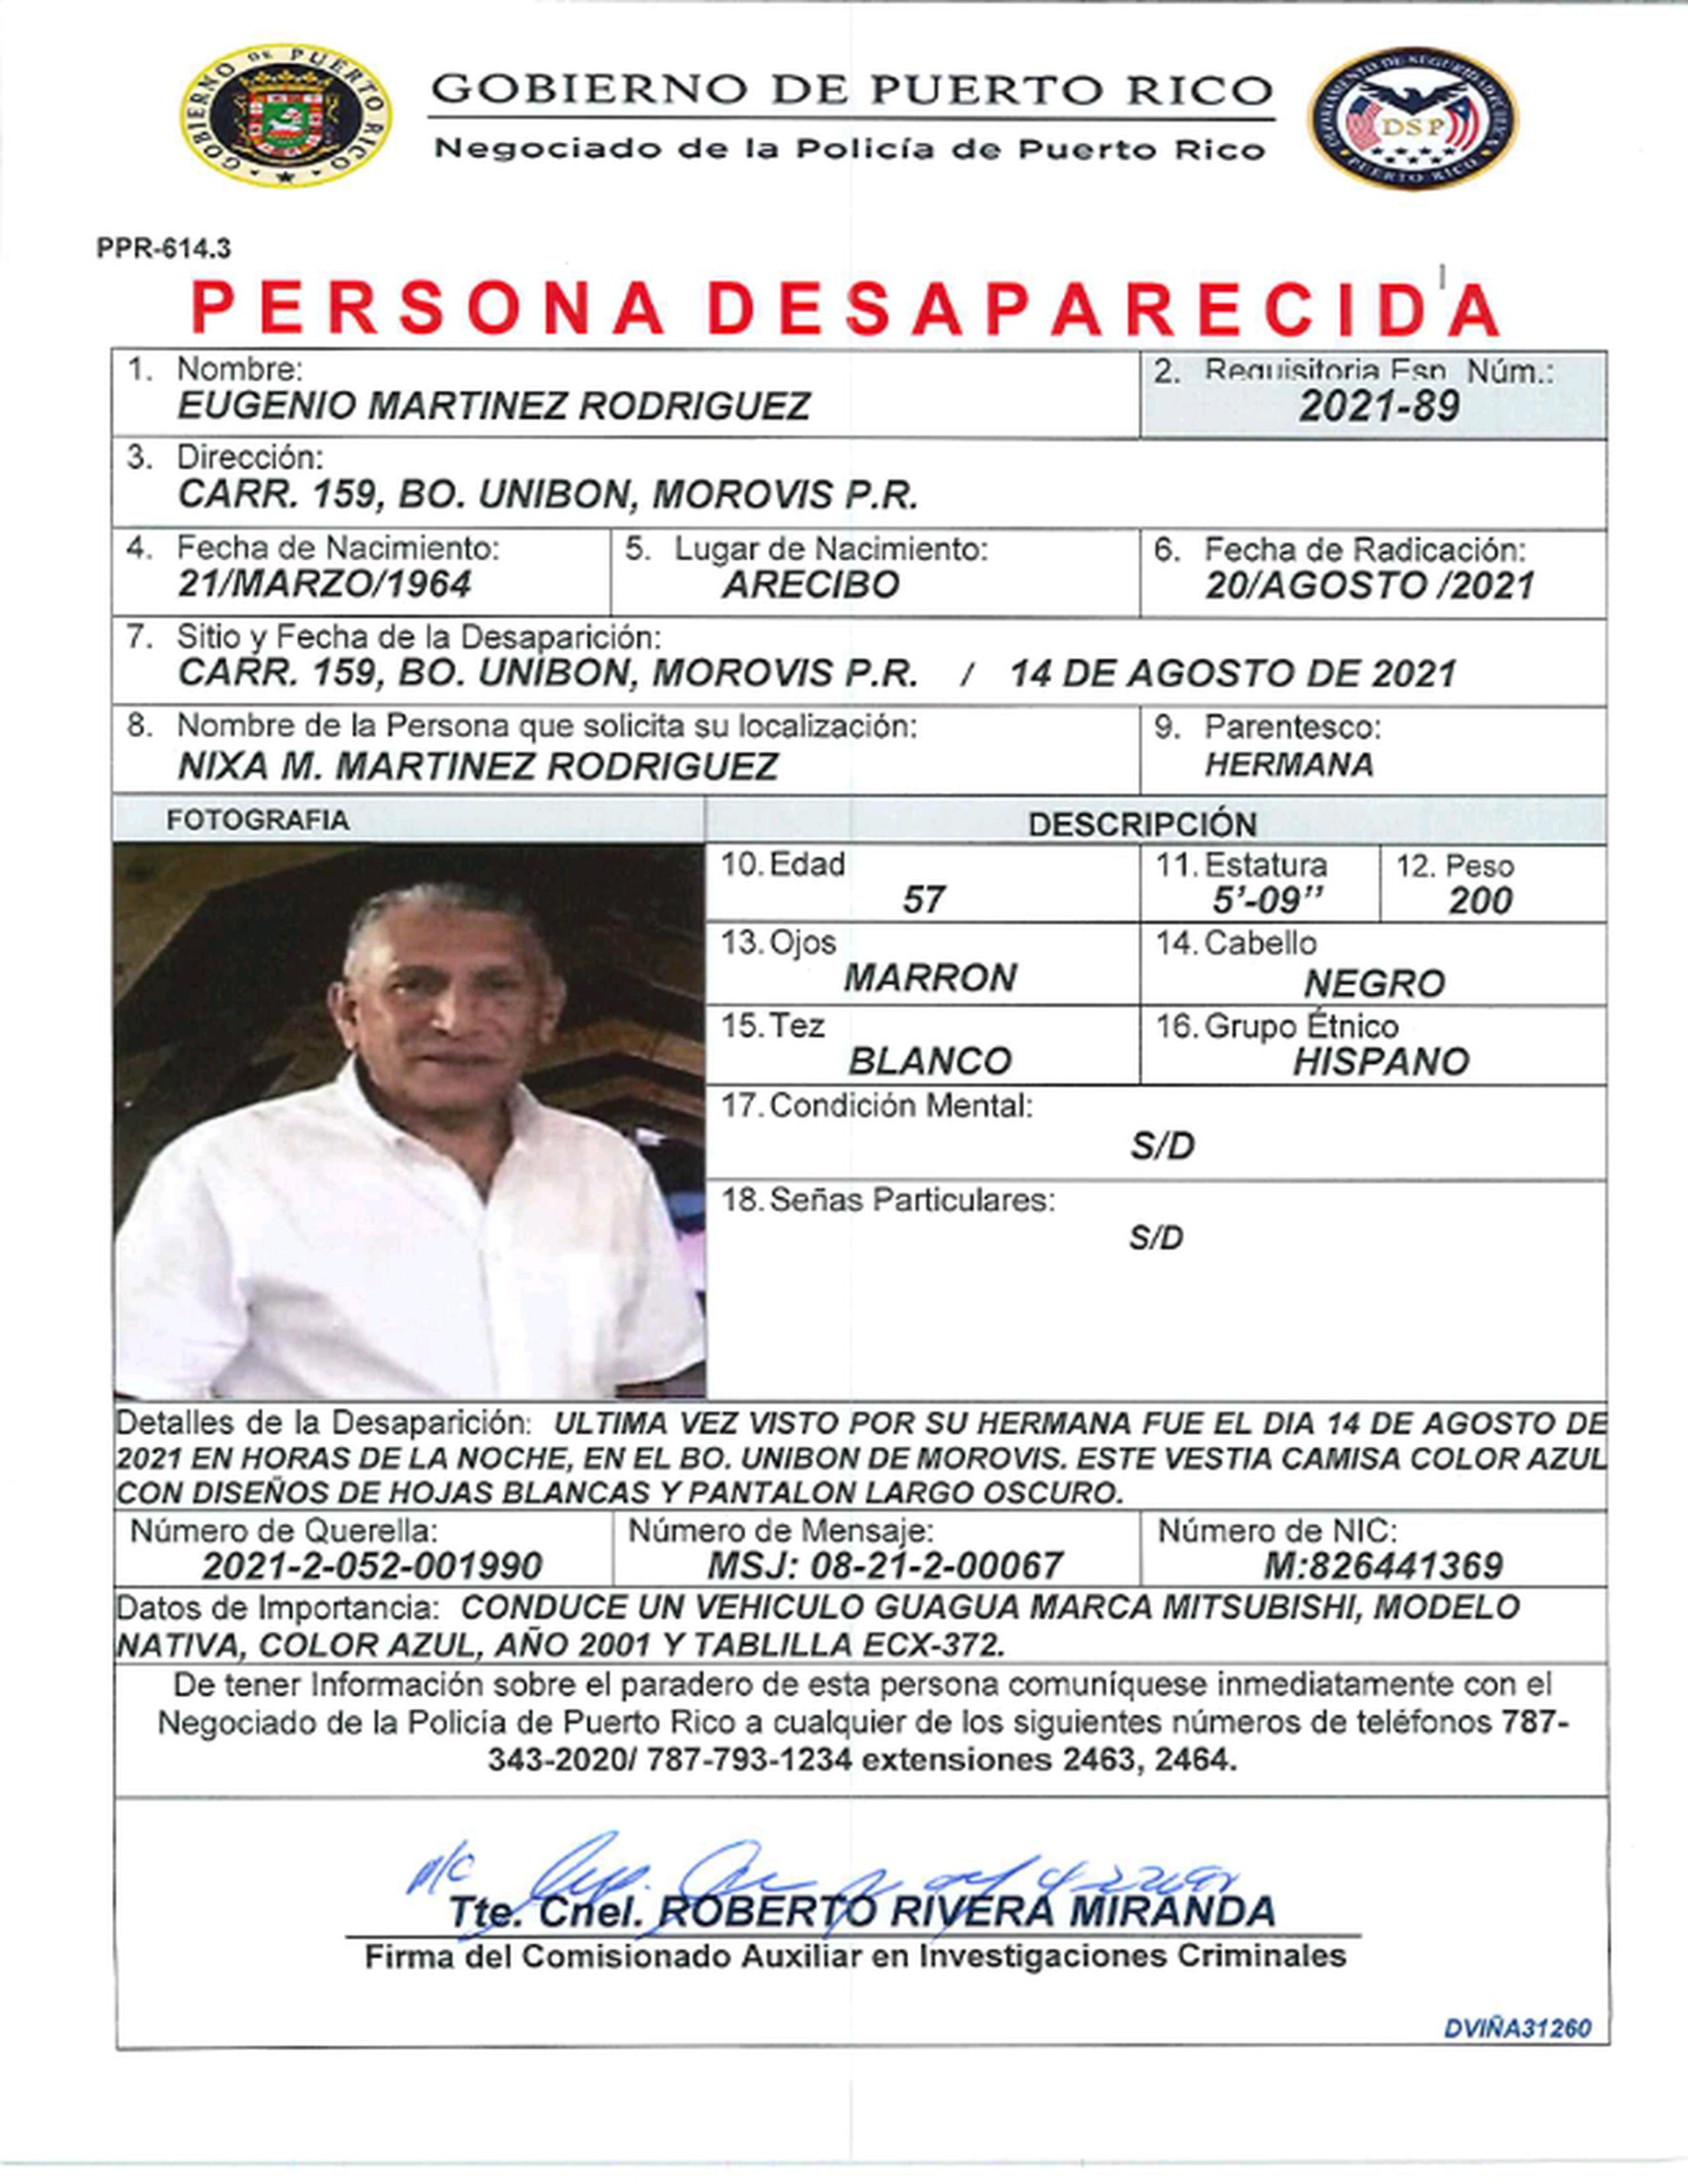 Eugenio Martínez Rodríguez se encuentra desaparecido desde el 14 de agosto, cuando fue visto por última vez en un negocio del barrio San Lorenzo, en Morovis.